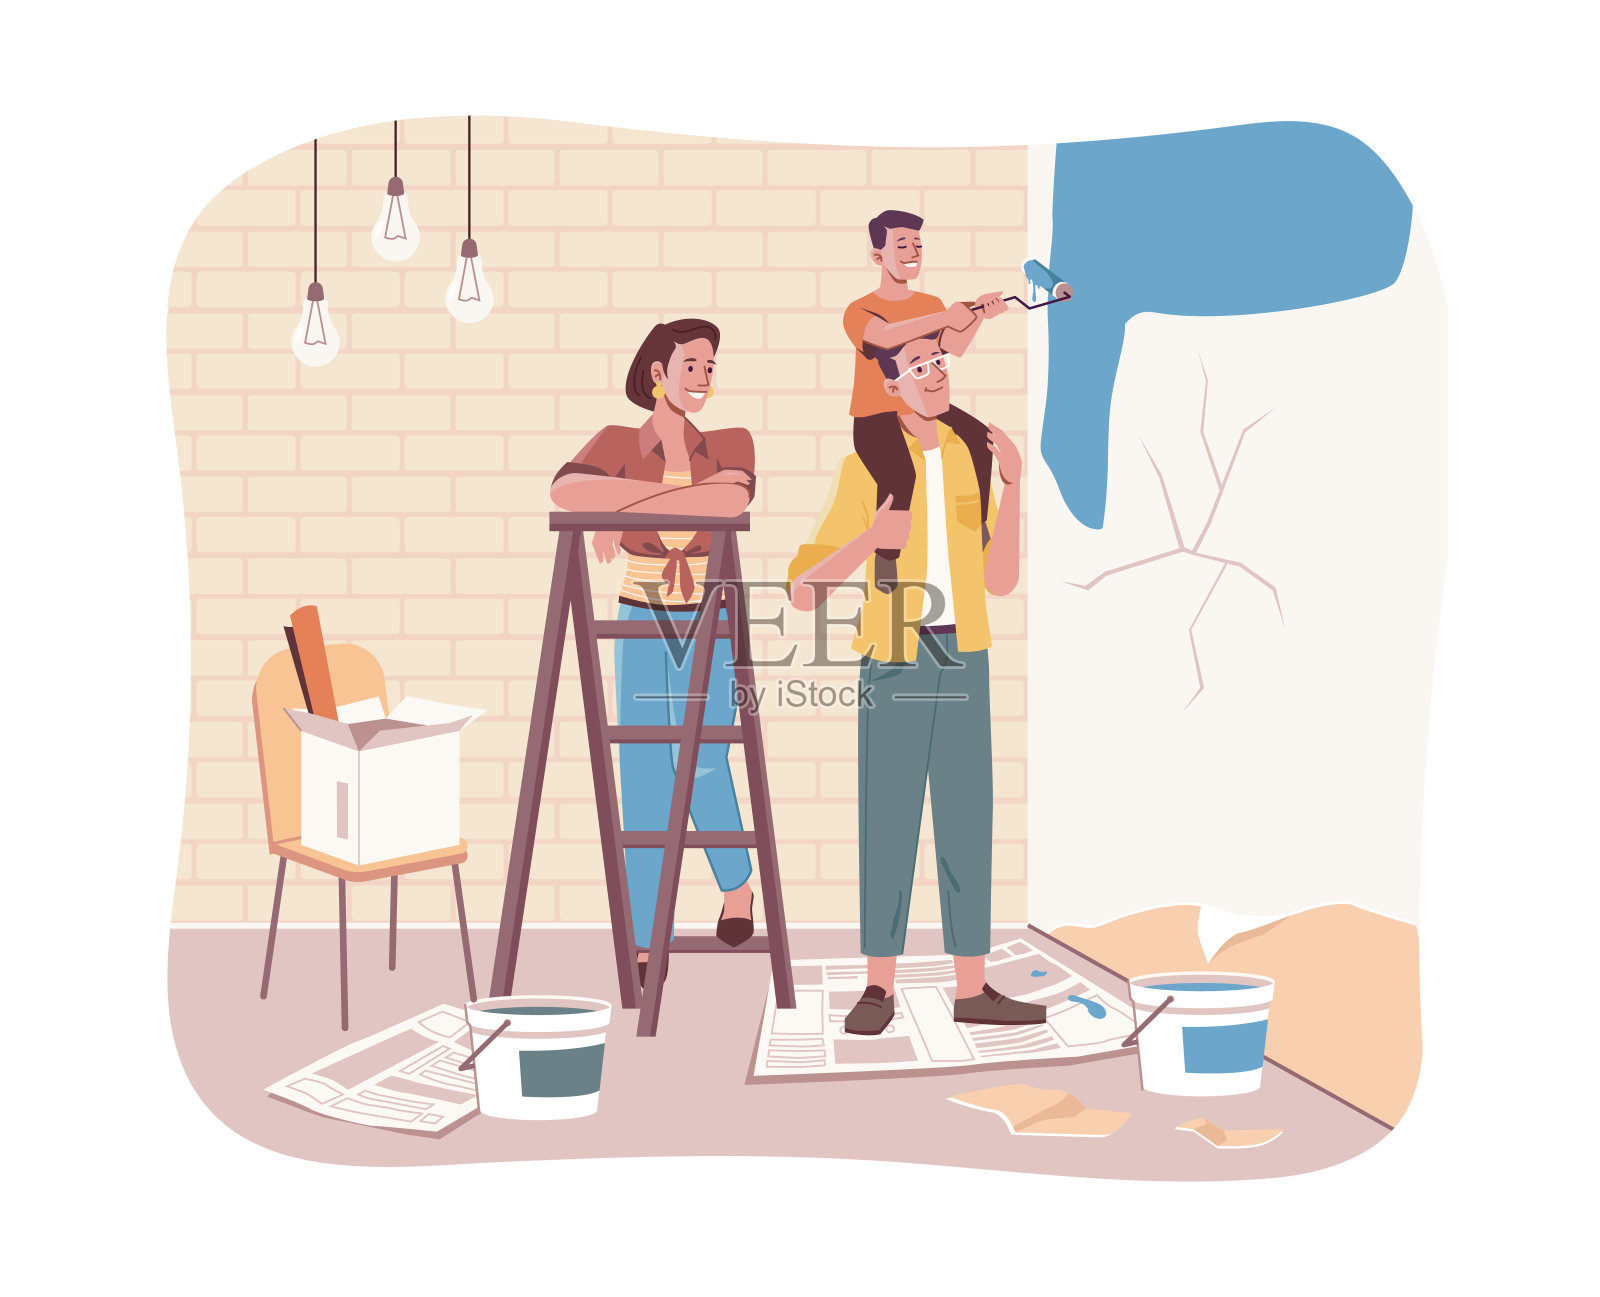 一家人一起做房屋维修工作。矢子坐在父亲的肩膀上，在新公寓的墙上作画。父母和孩子在公寓装修。母亲有梯子，孩子有滚筒插画图片素材